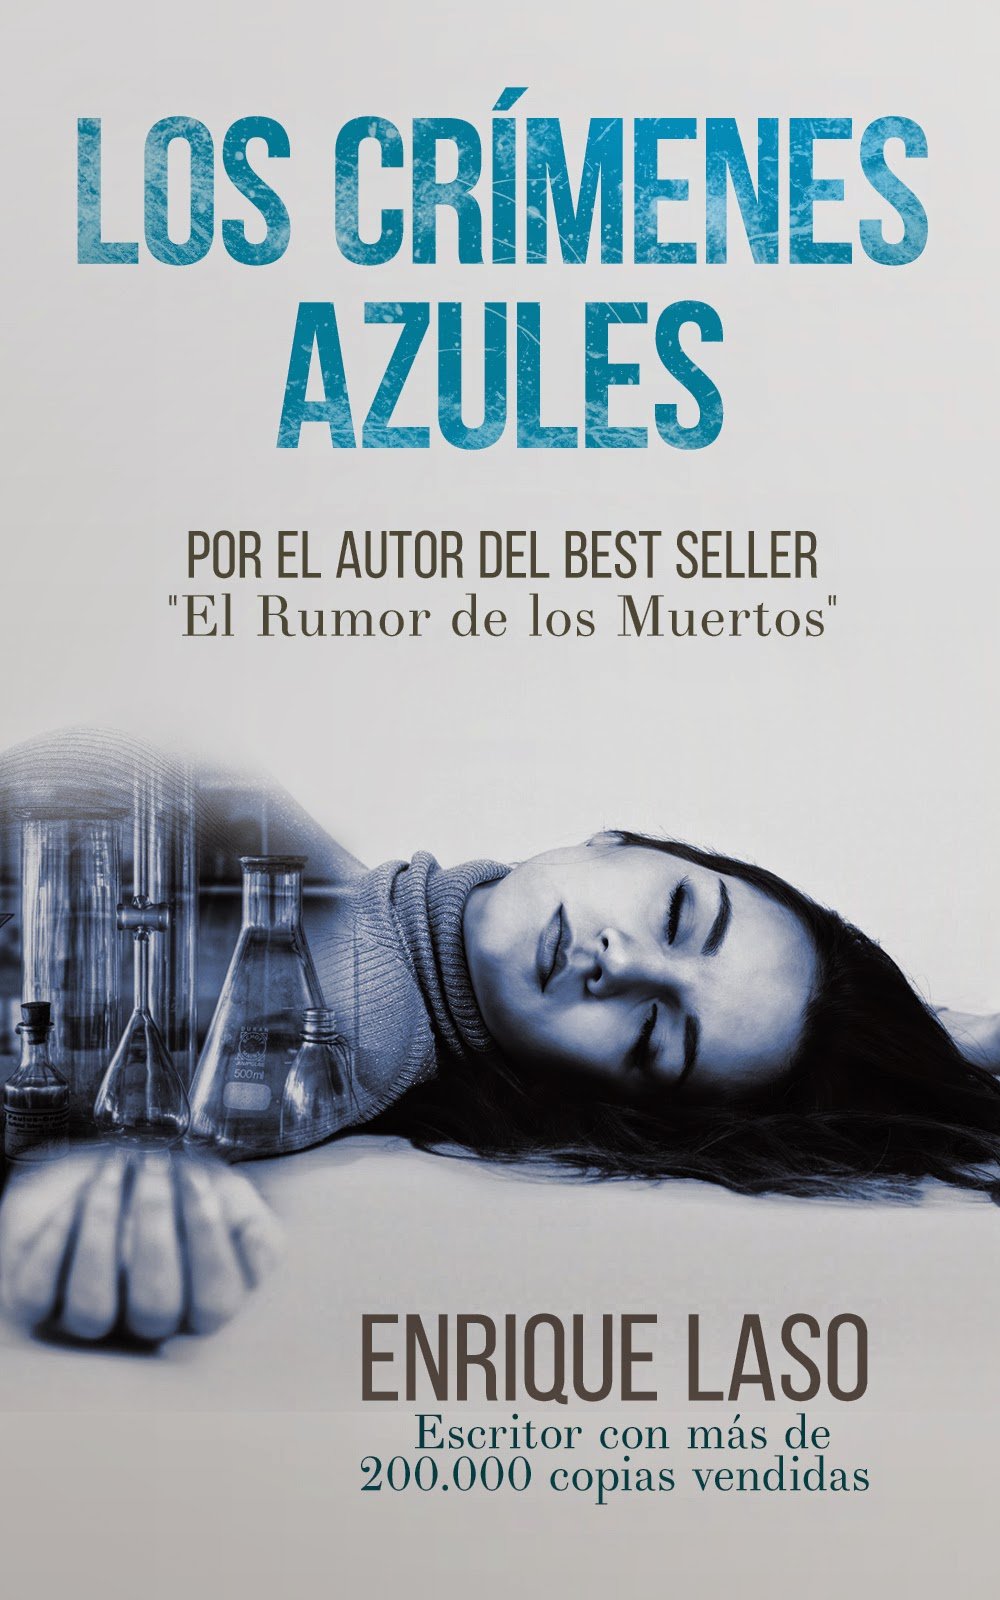 LosCrimenesAzules 1 #LosCrímenesAzules sólo 0.99 en #Amazon